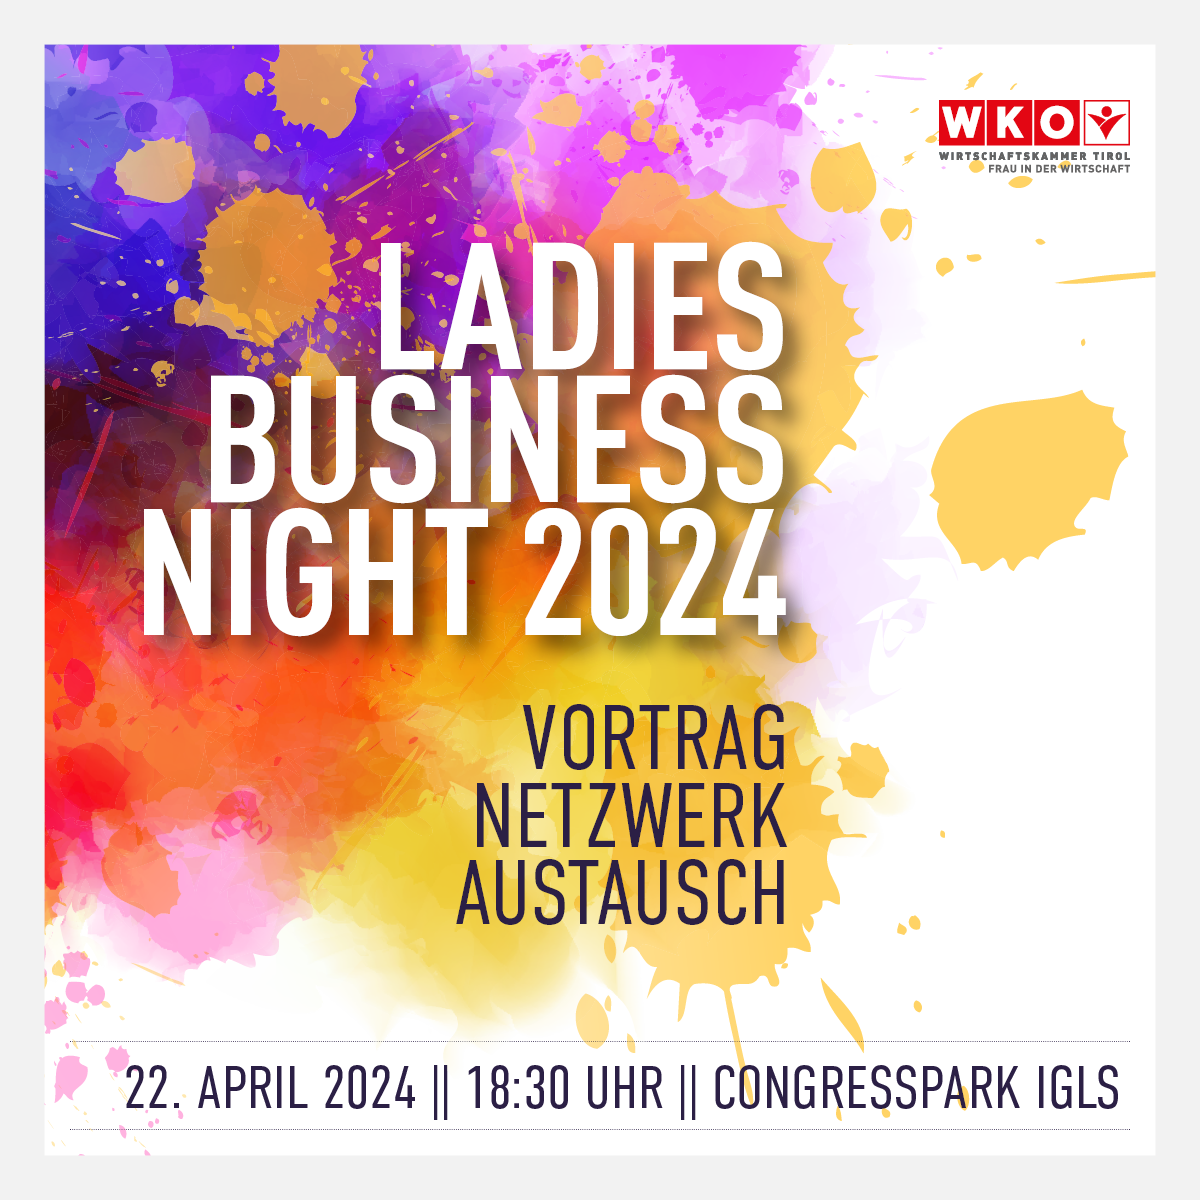 Die „Ladies Business Night 2024“ findet am 22. April 2024 um 18:30 Uhr im Congresspark Igls statt. Dieses Event der Wirtschaftskammer Tirol ermöglicht Vorträge, Netzwerkbildung und Austausch speziell für Frauen in der Wirtschaft.